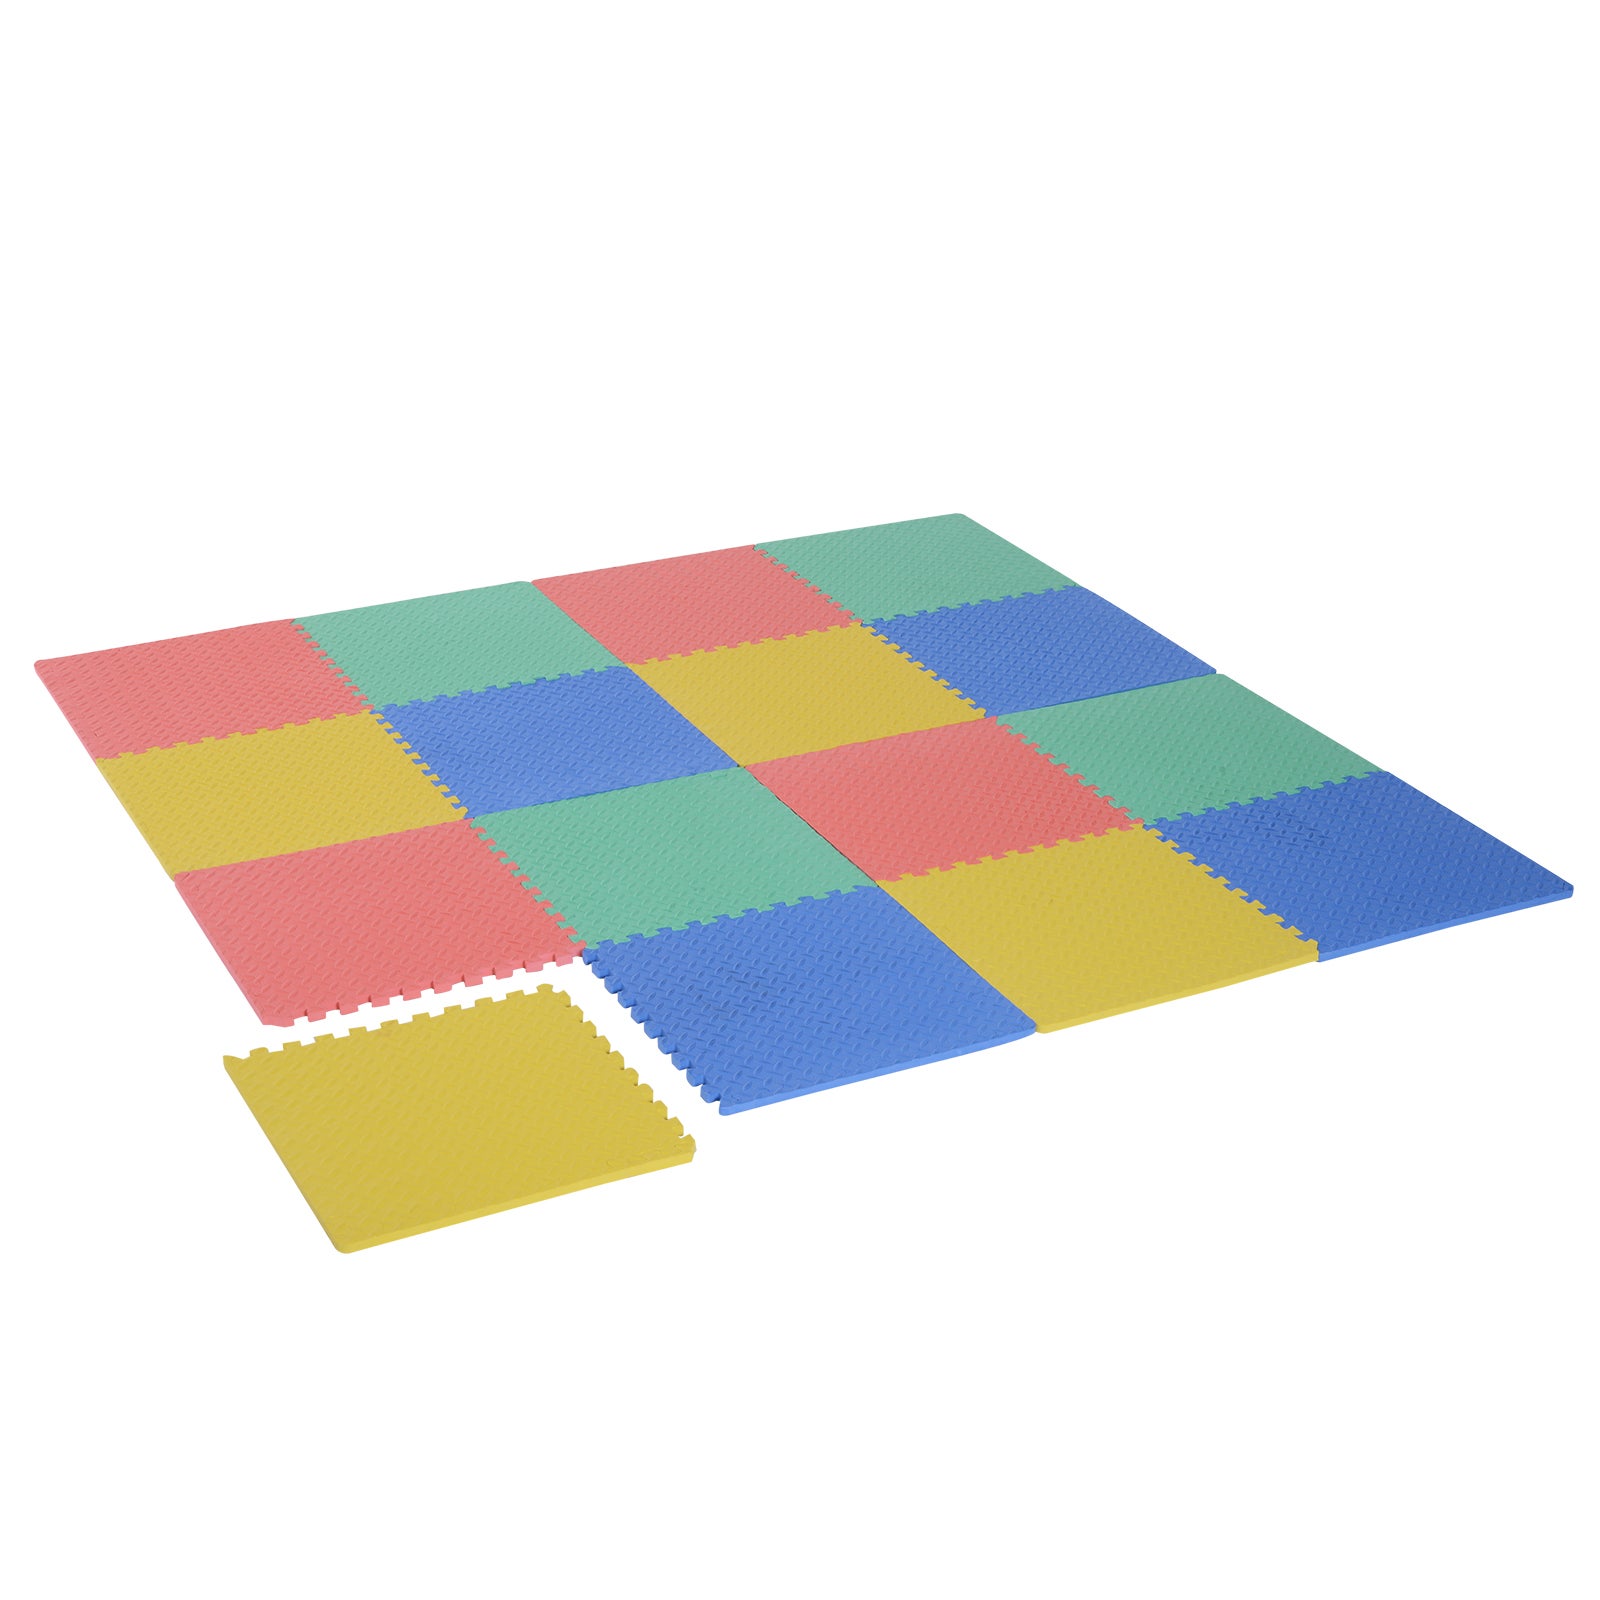 YANGJUN-tappeto puzzle Bambini Antiscivolo Impermeabile Facile da Pulire Protezione Addensare 2 Cm di Spessore Color : A, Size : 50x50x2cm-4pcs 